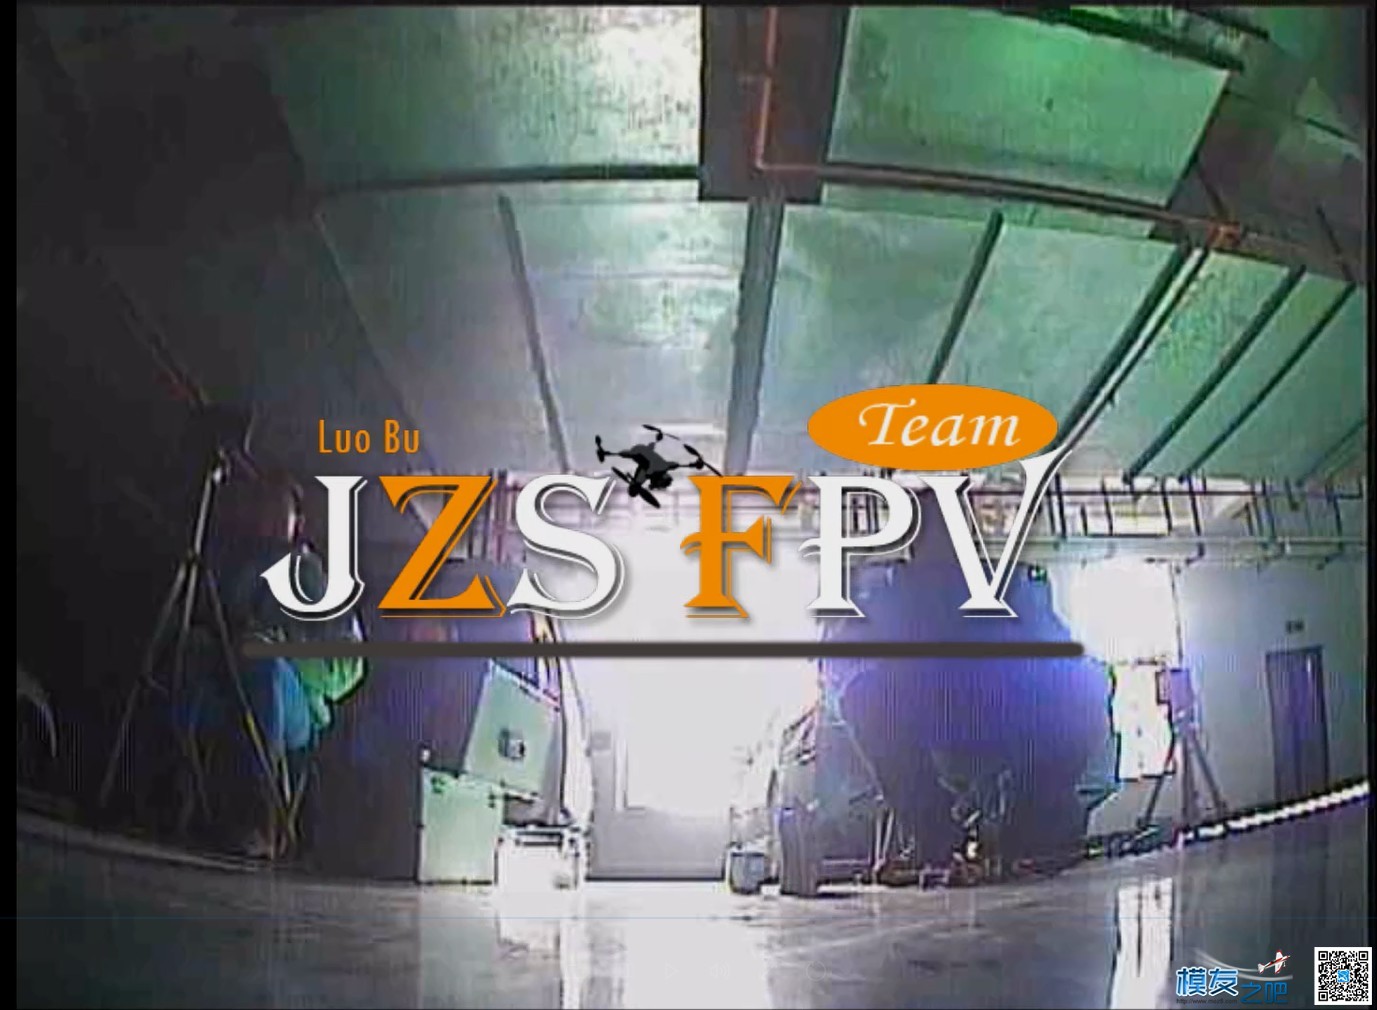 萝卜周日QAV210穿越车库首飞,DVR录制（JZS FPV） 轰20首飞成功,轰20首飞图,首飞什么意思,轰20首飞 作者:义乌大萝卜 3166 